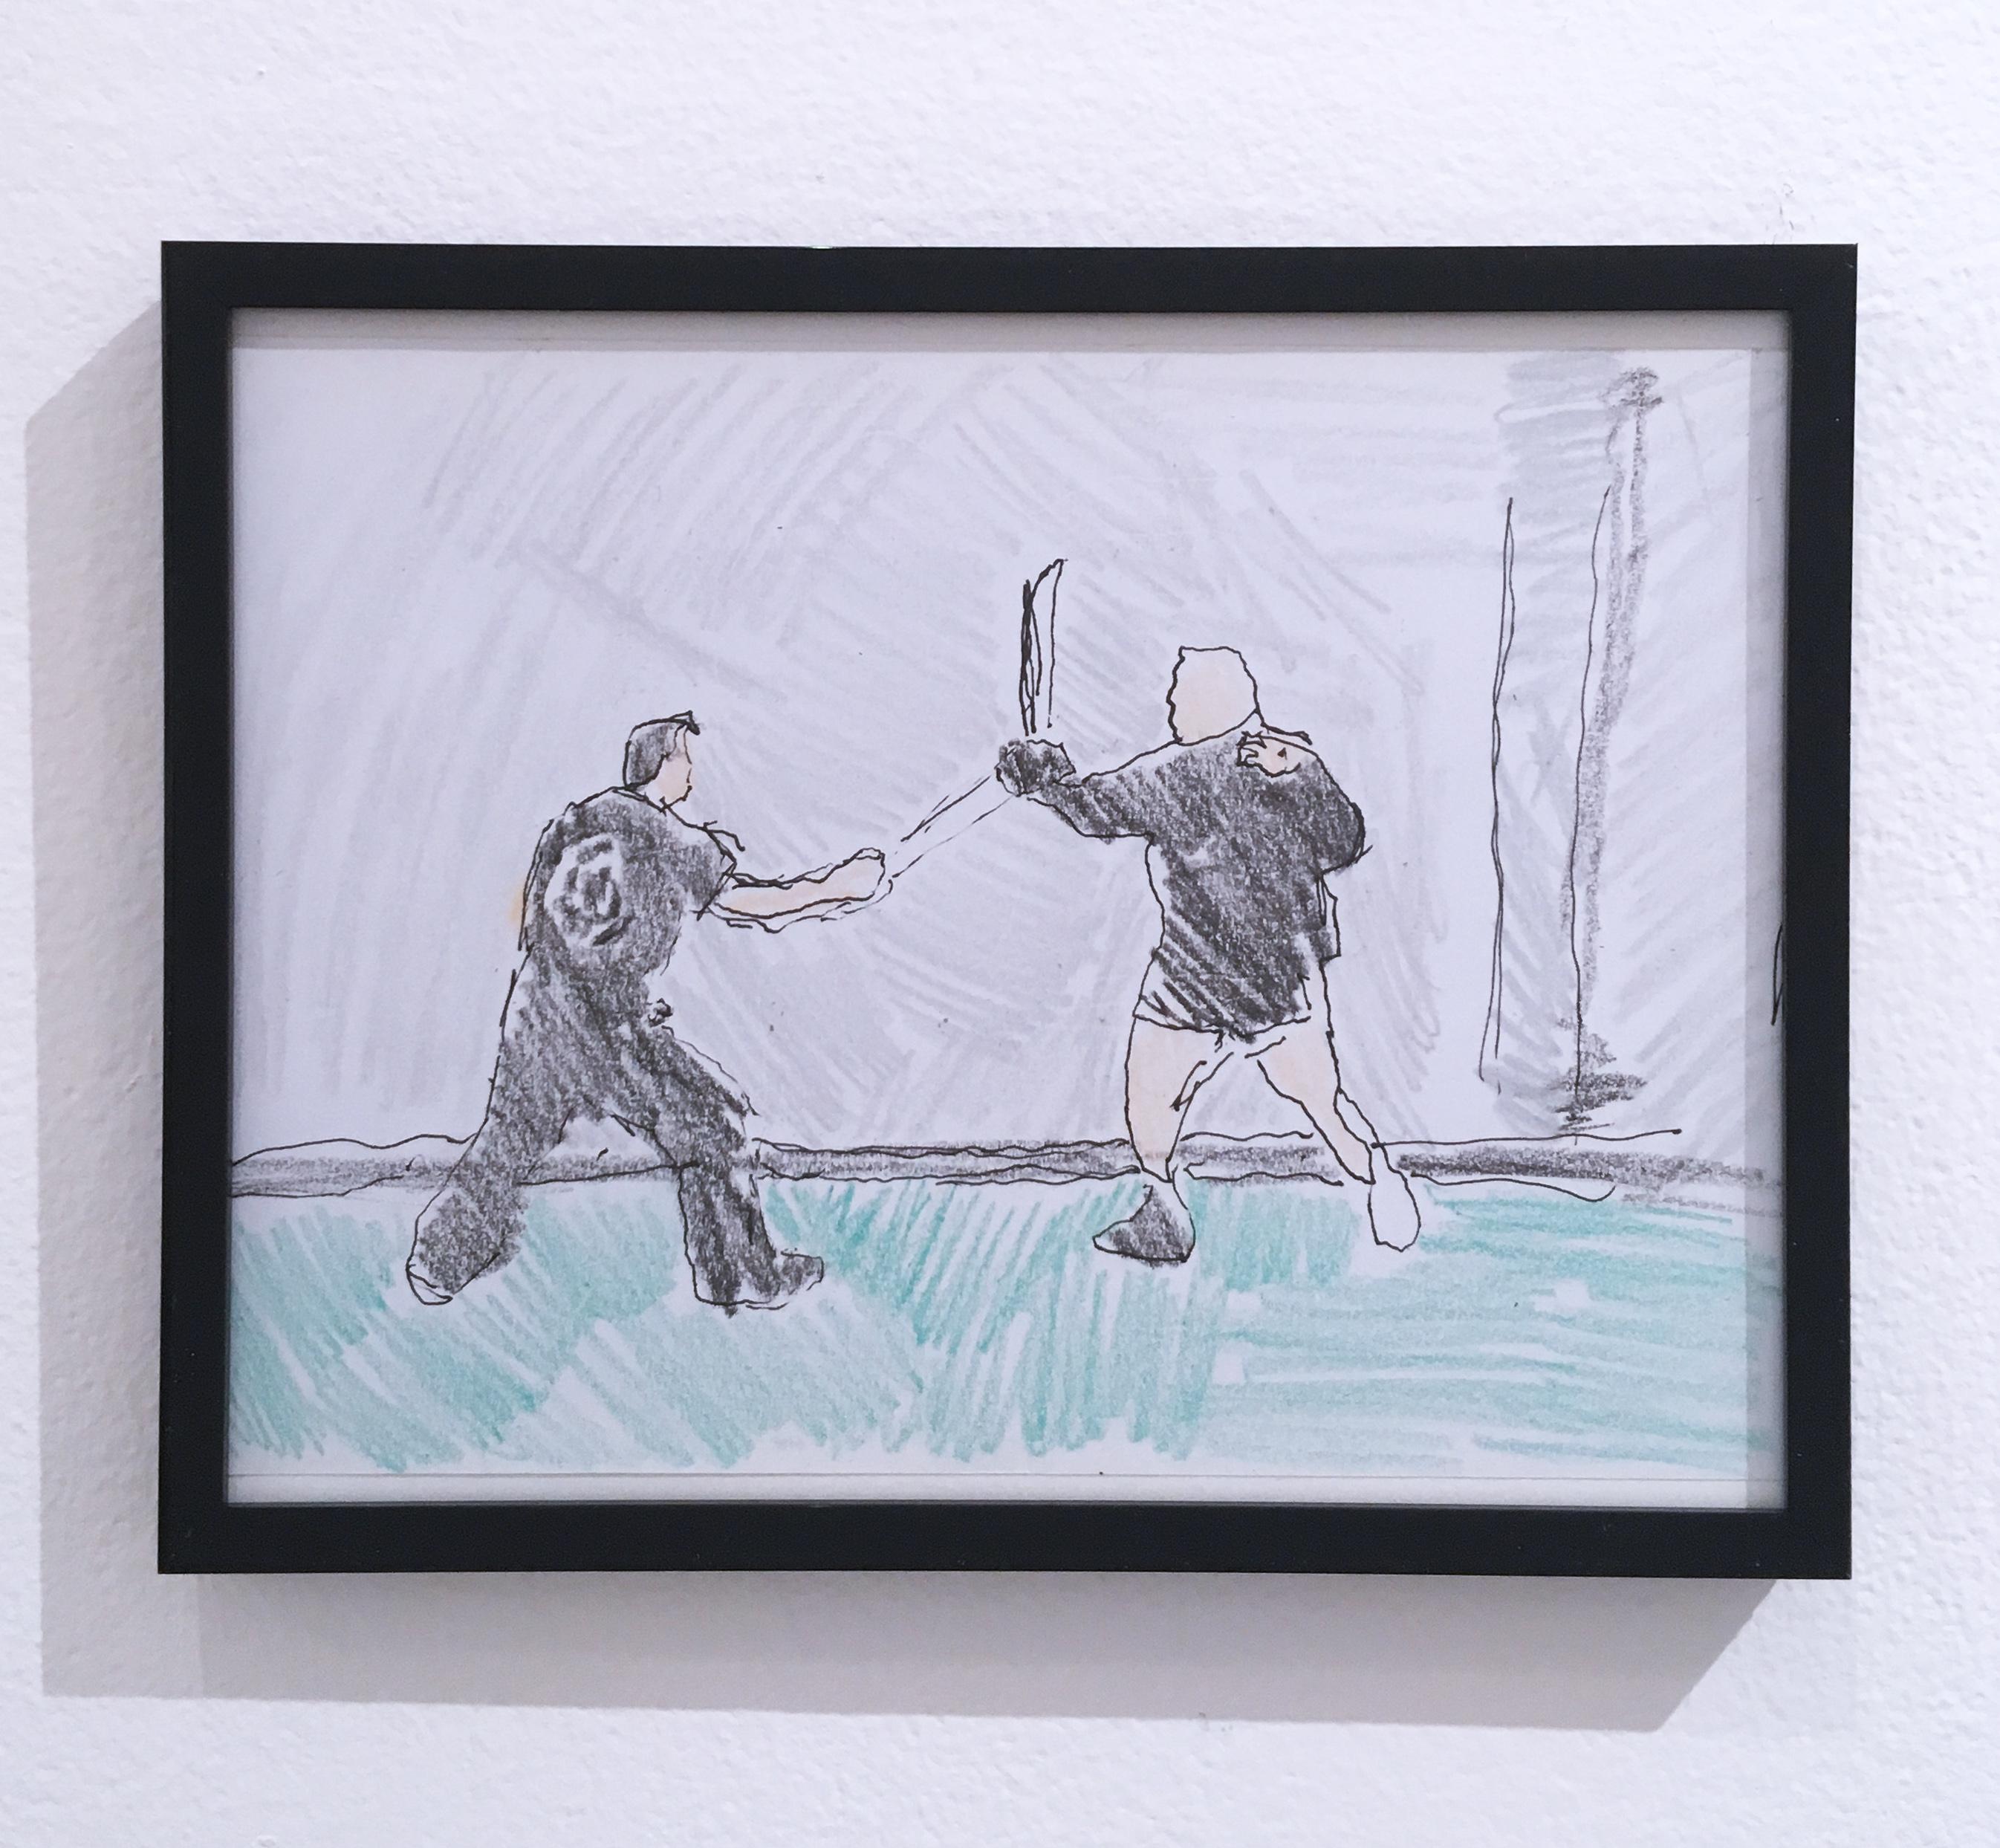 Sword Fight, 2018, stylo et crayon sur papier, figuratif, dessin, encadré